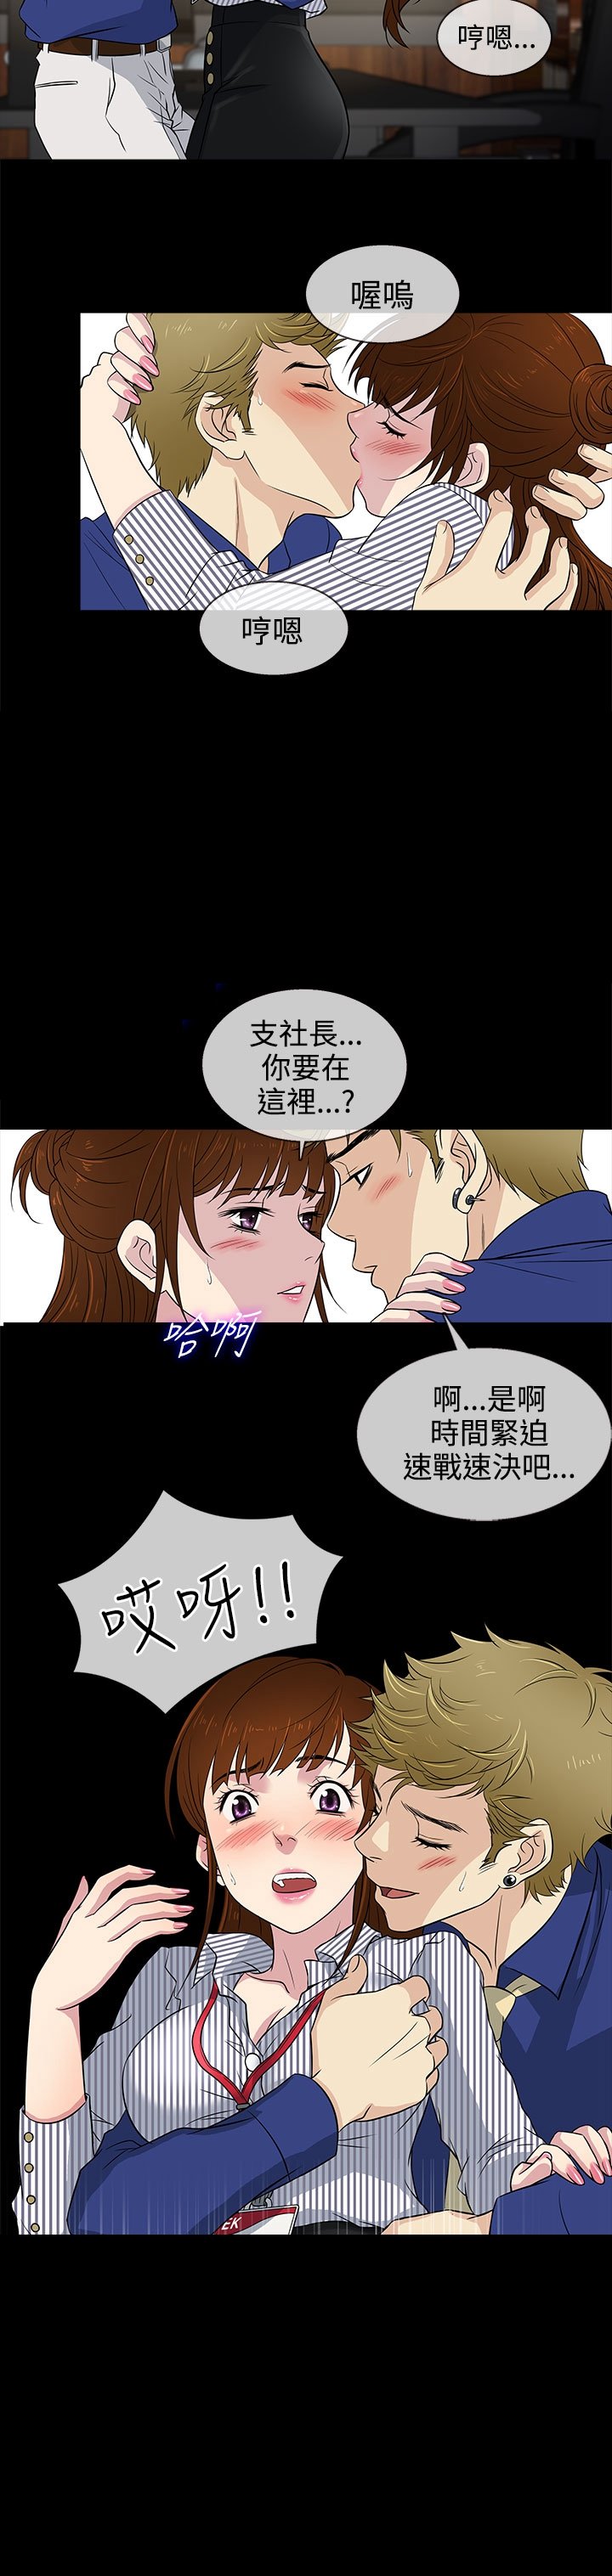 韩国漫画《任性前妻》 第10话 终于